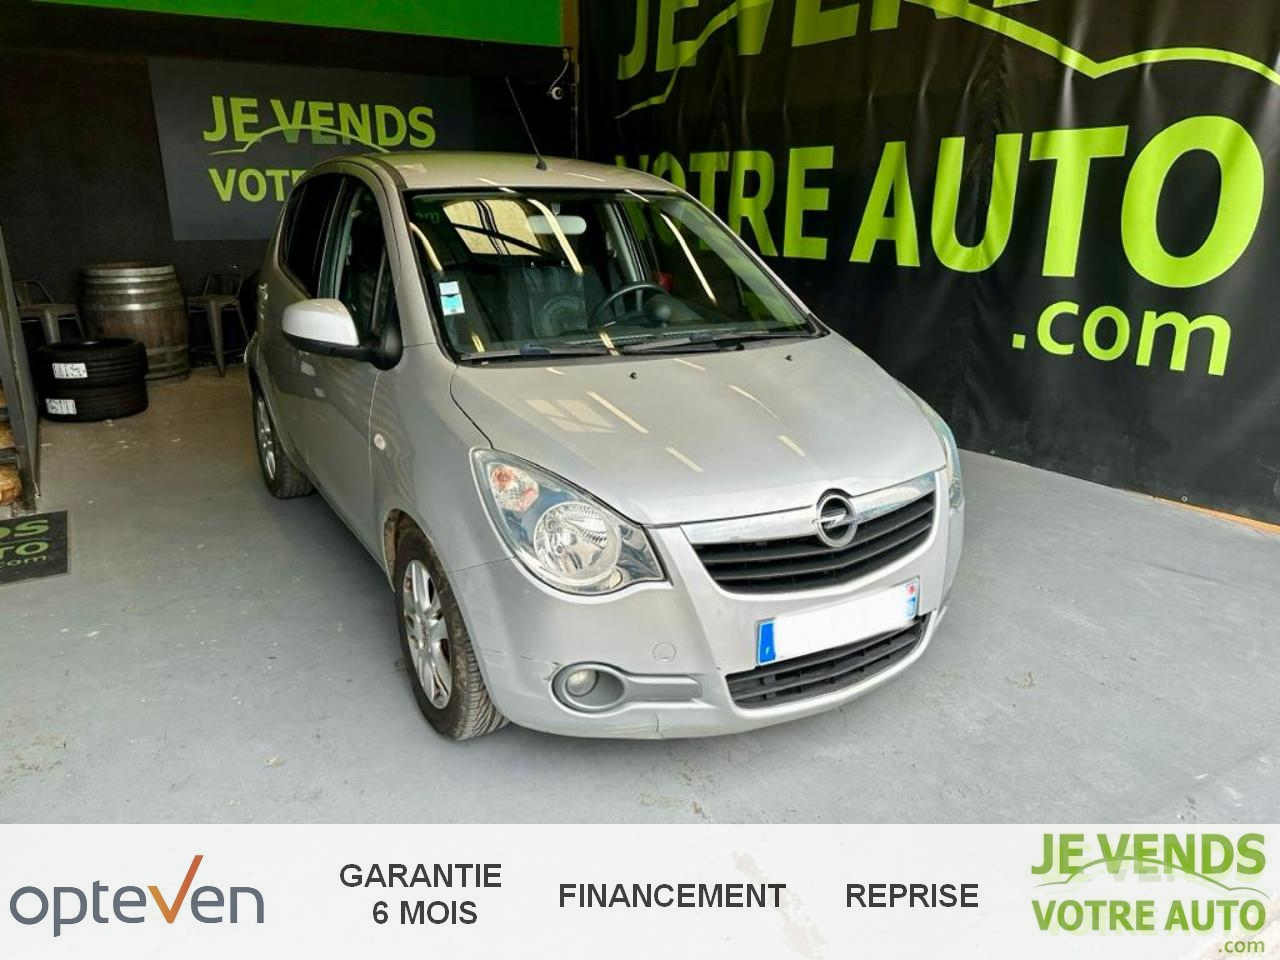 Voiture Opel occasion à Perpignan (66000) : annonces achat de véhicules Opel